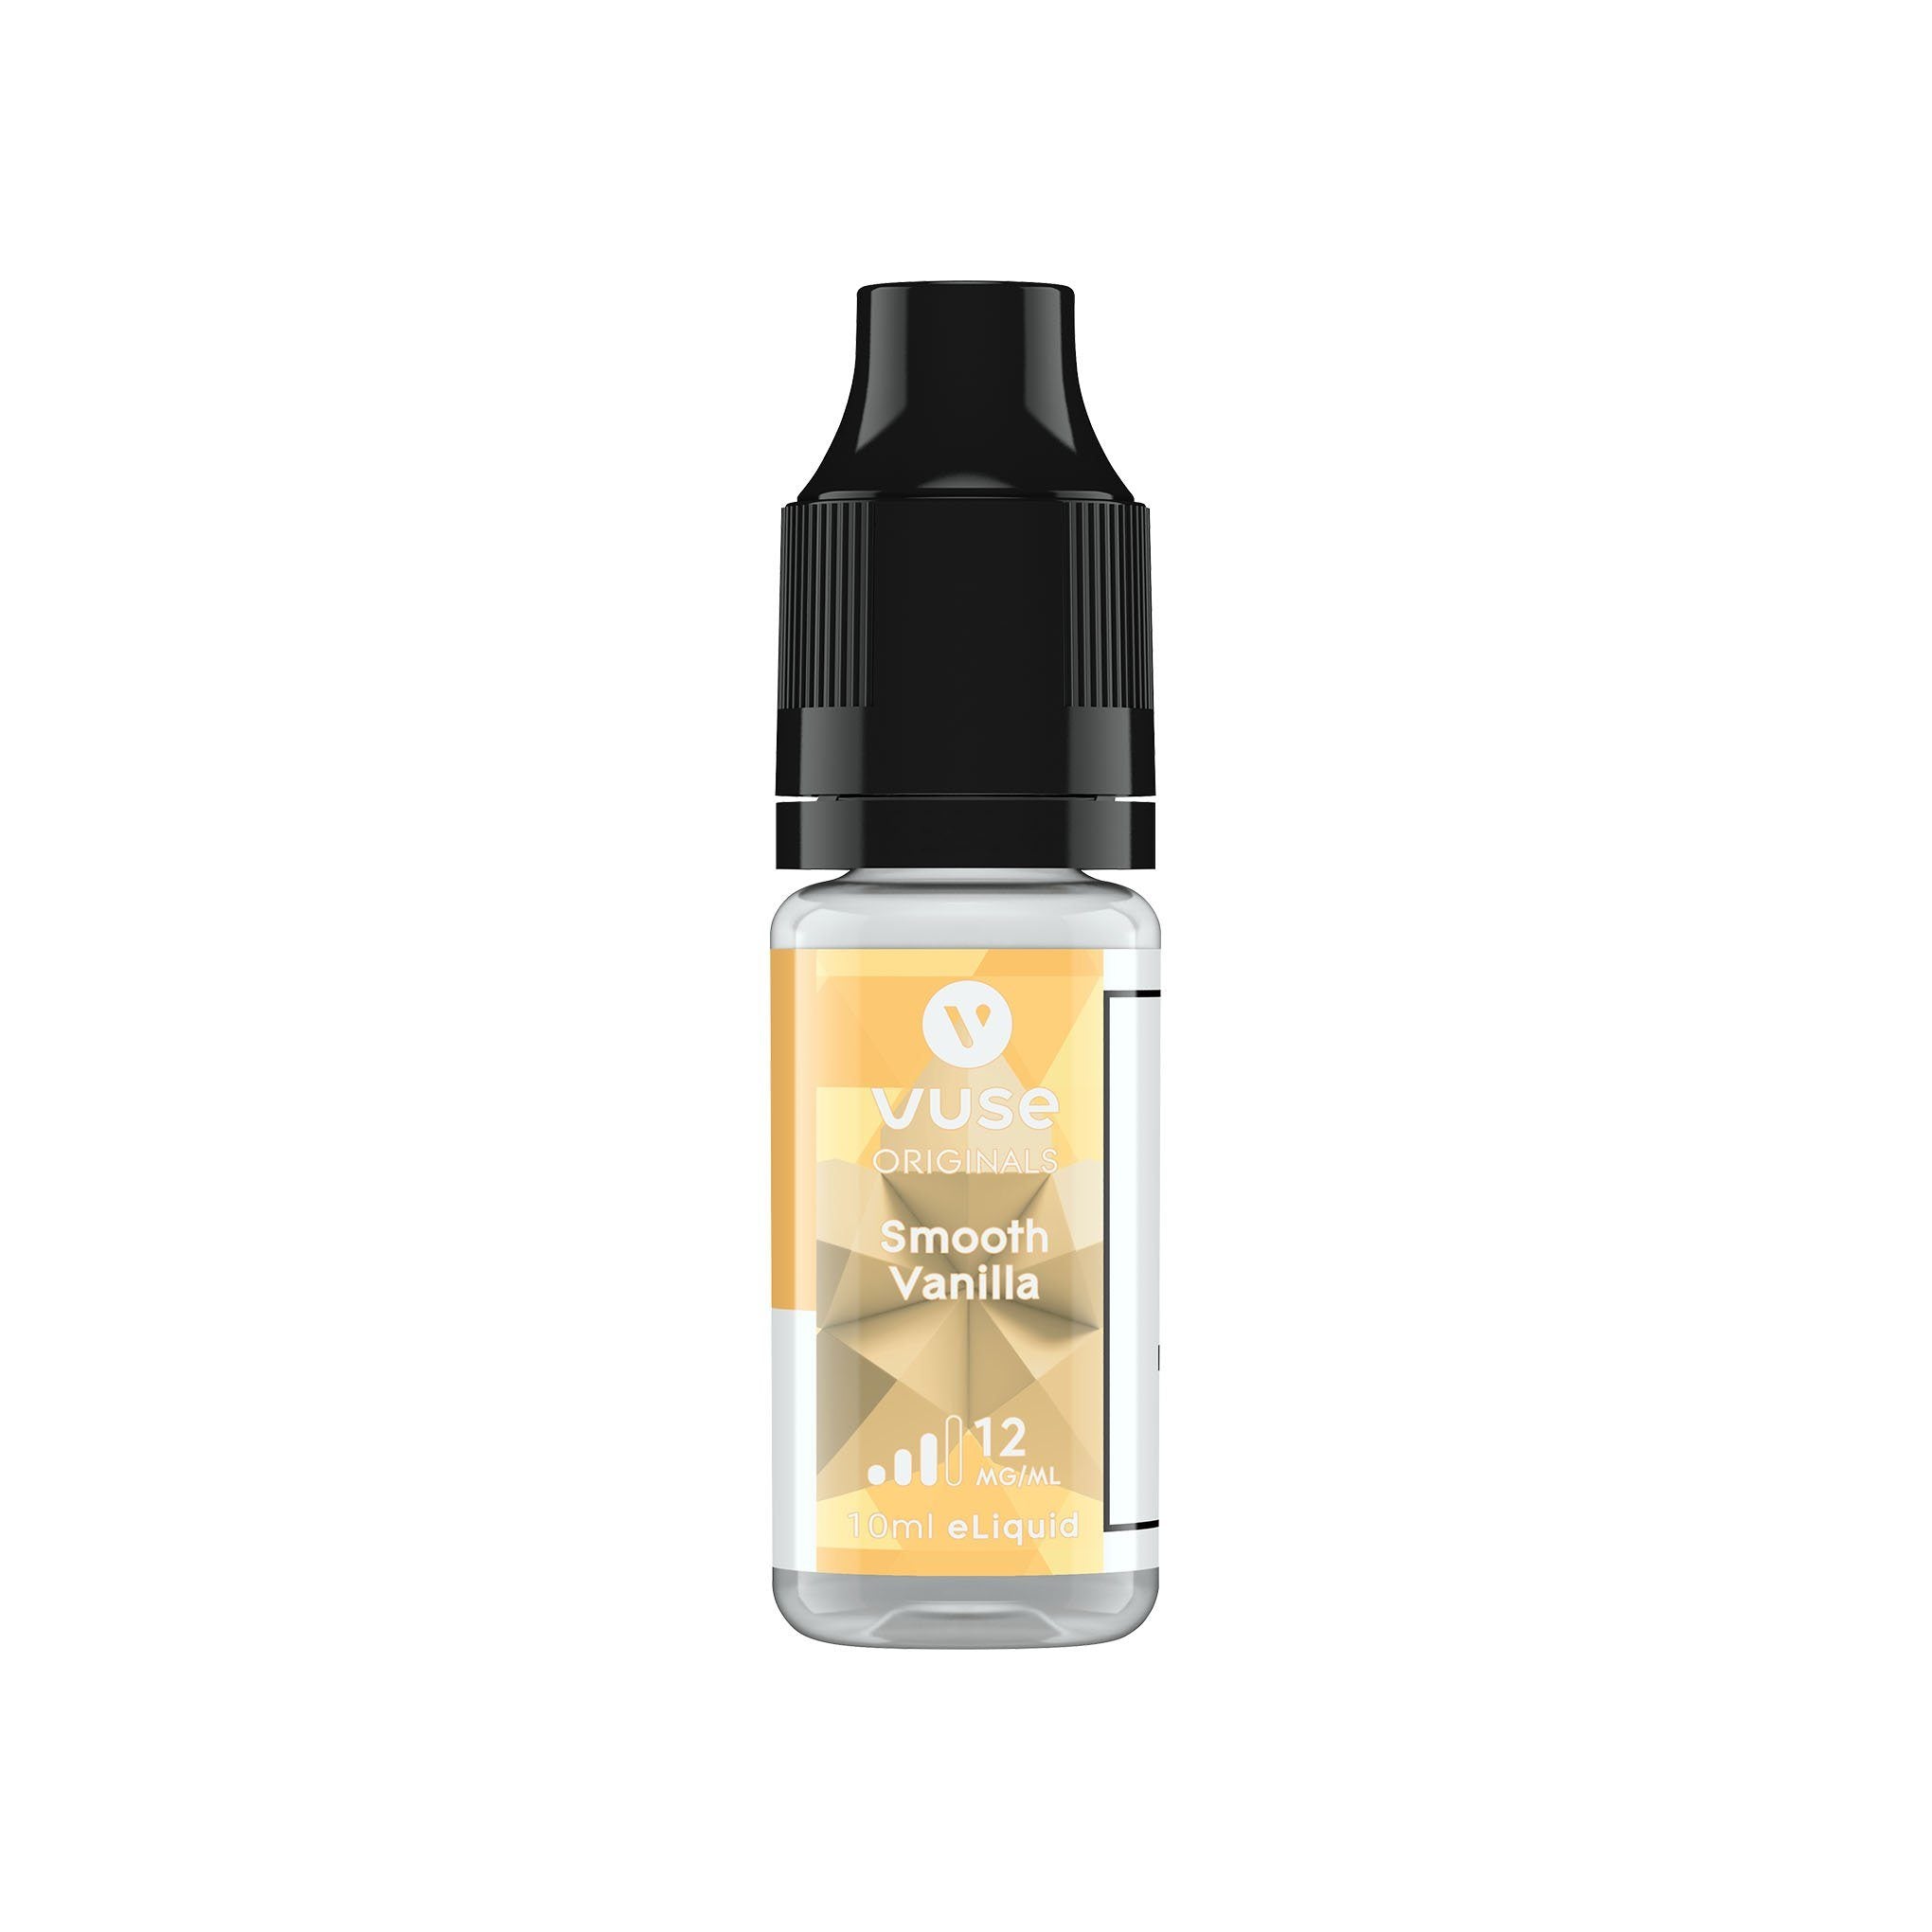 VUSE Original E-Liquid Smooth Vanilla 12MG - Medium Nicotine 